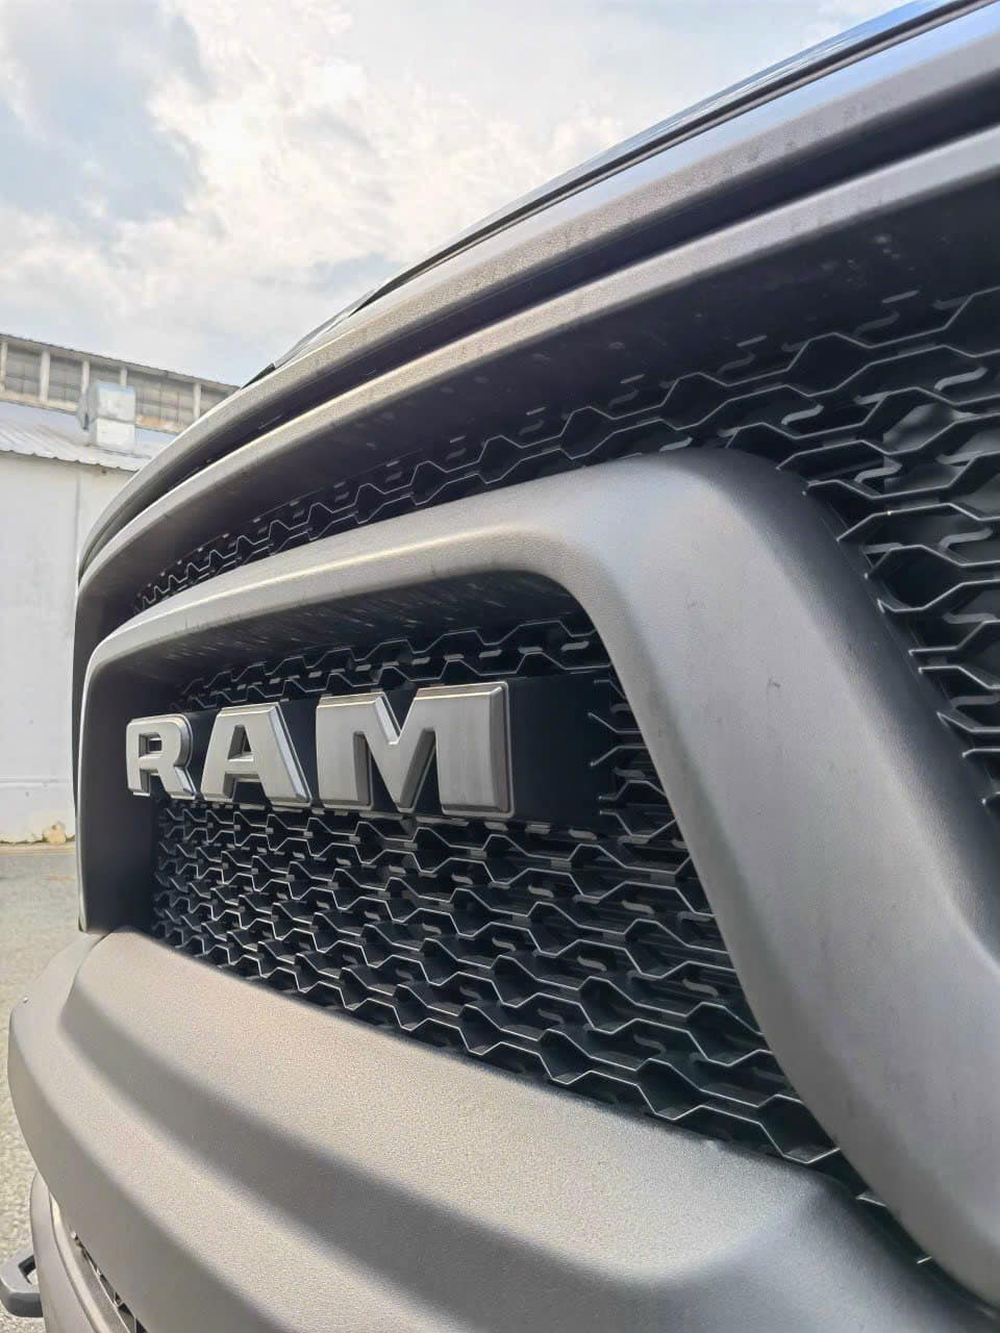 Ram 1500 Rebel ra mắt tuần sau tại Việt Nam: Giá dự kiến gần 5,3 tỷ, đắt như F-150 Raptor, nhiều trang bị thể thao - Ảnh 6.